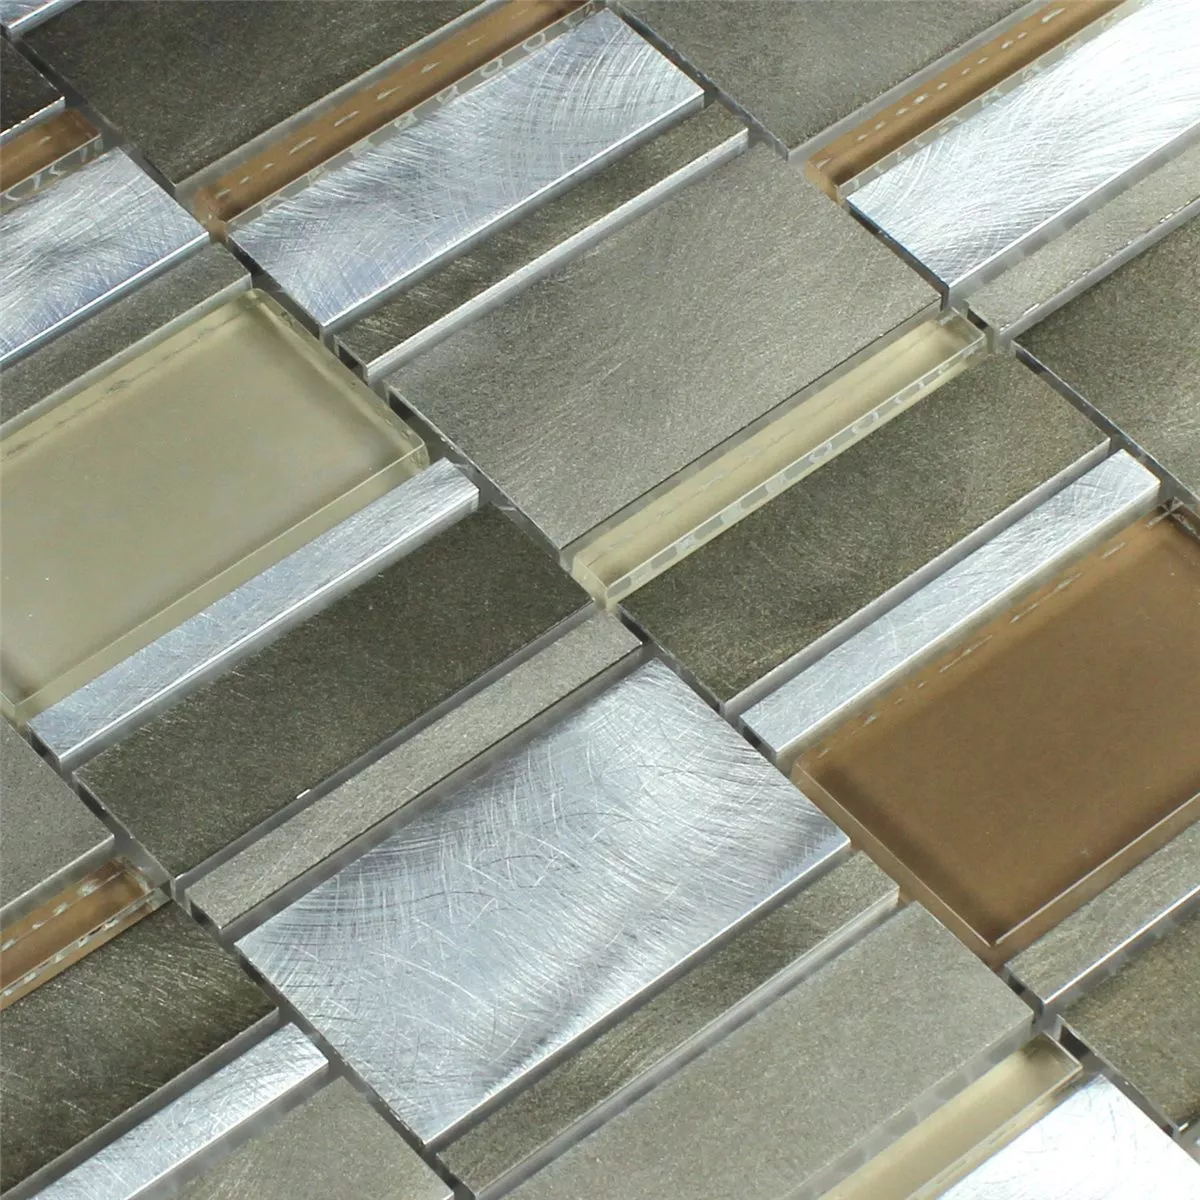 Muster von Mosaikfliesen Aluminium Glas Braun Beige